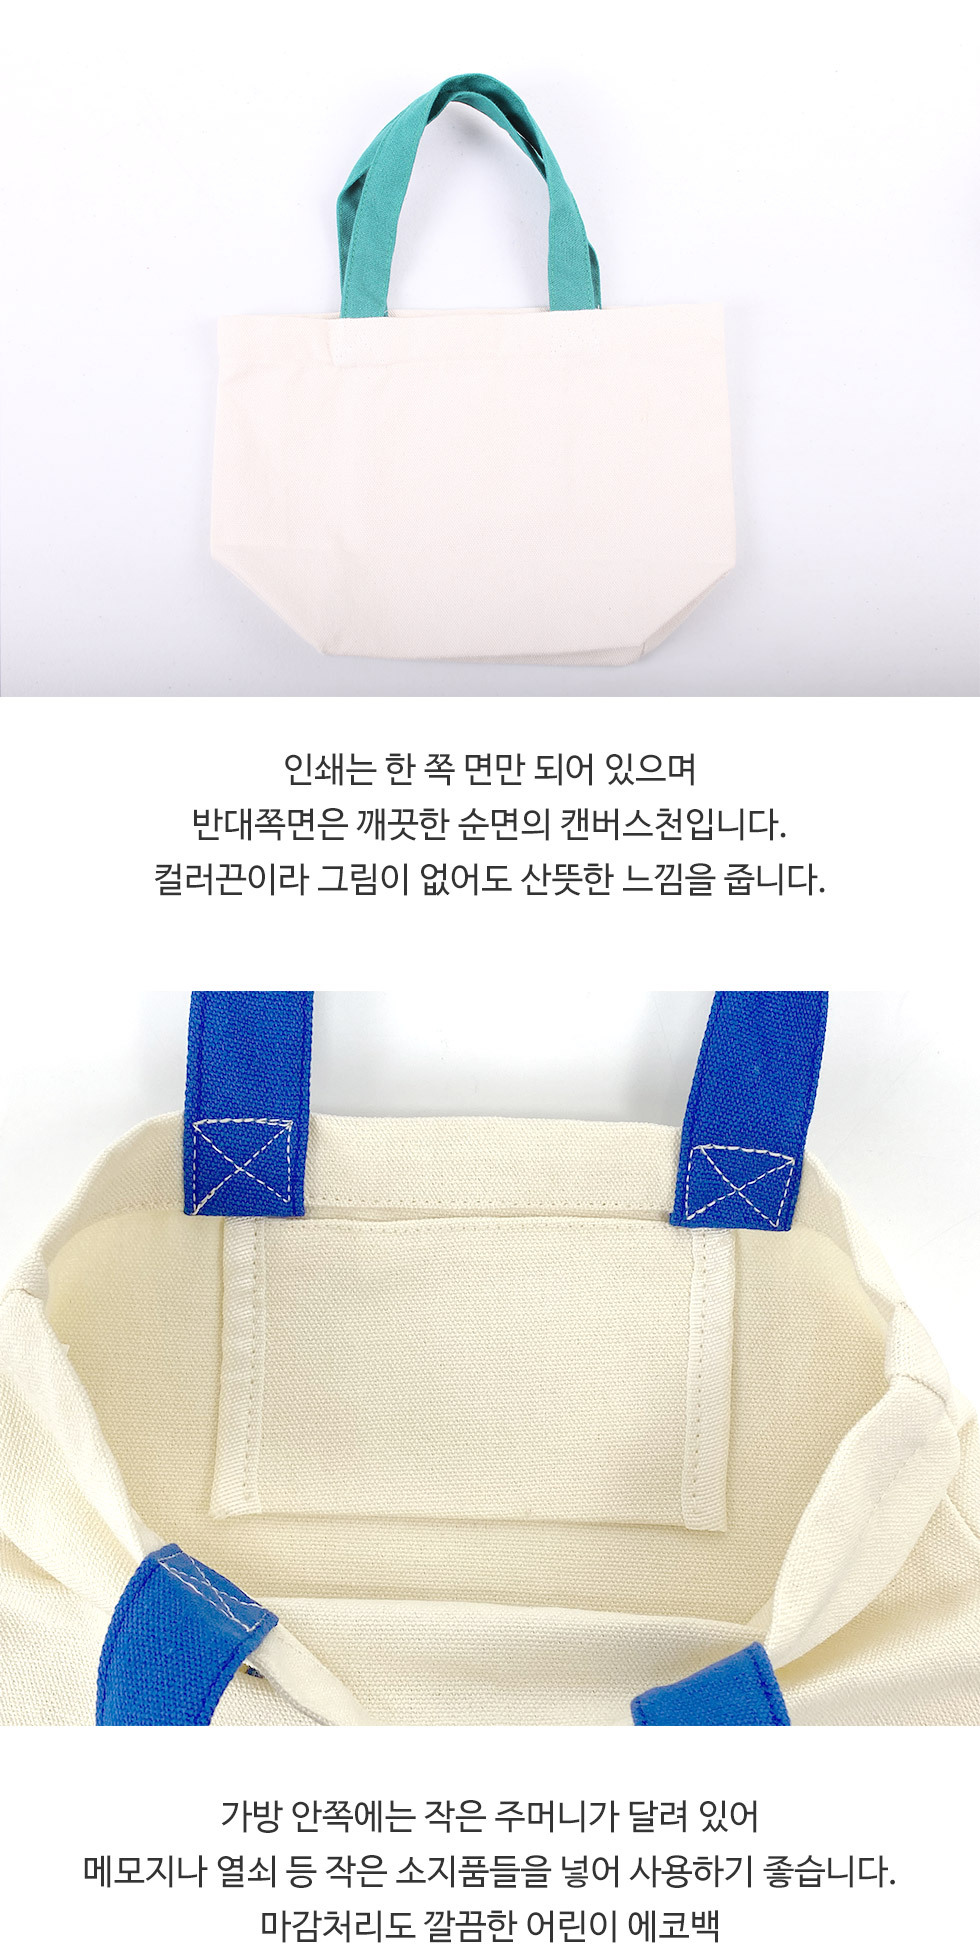 어린이에코백 - 4종 제품의 특징, 한쪽면 인쇄, 가방 안쪽 포켓